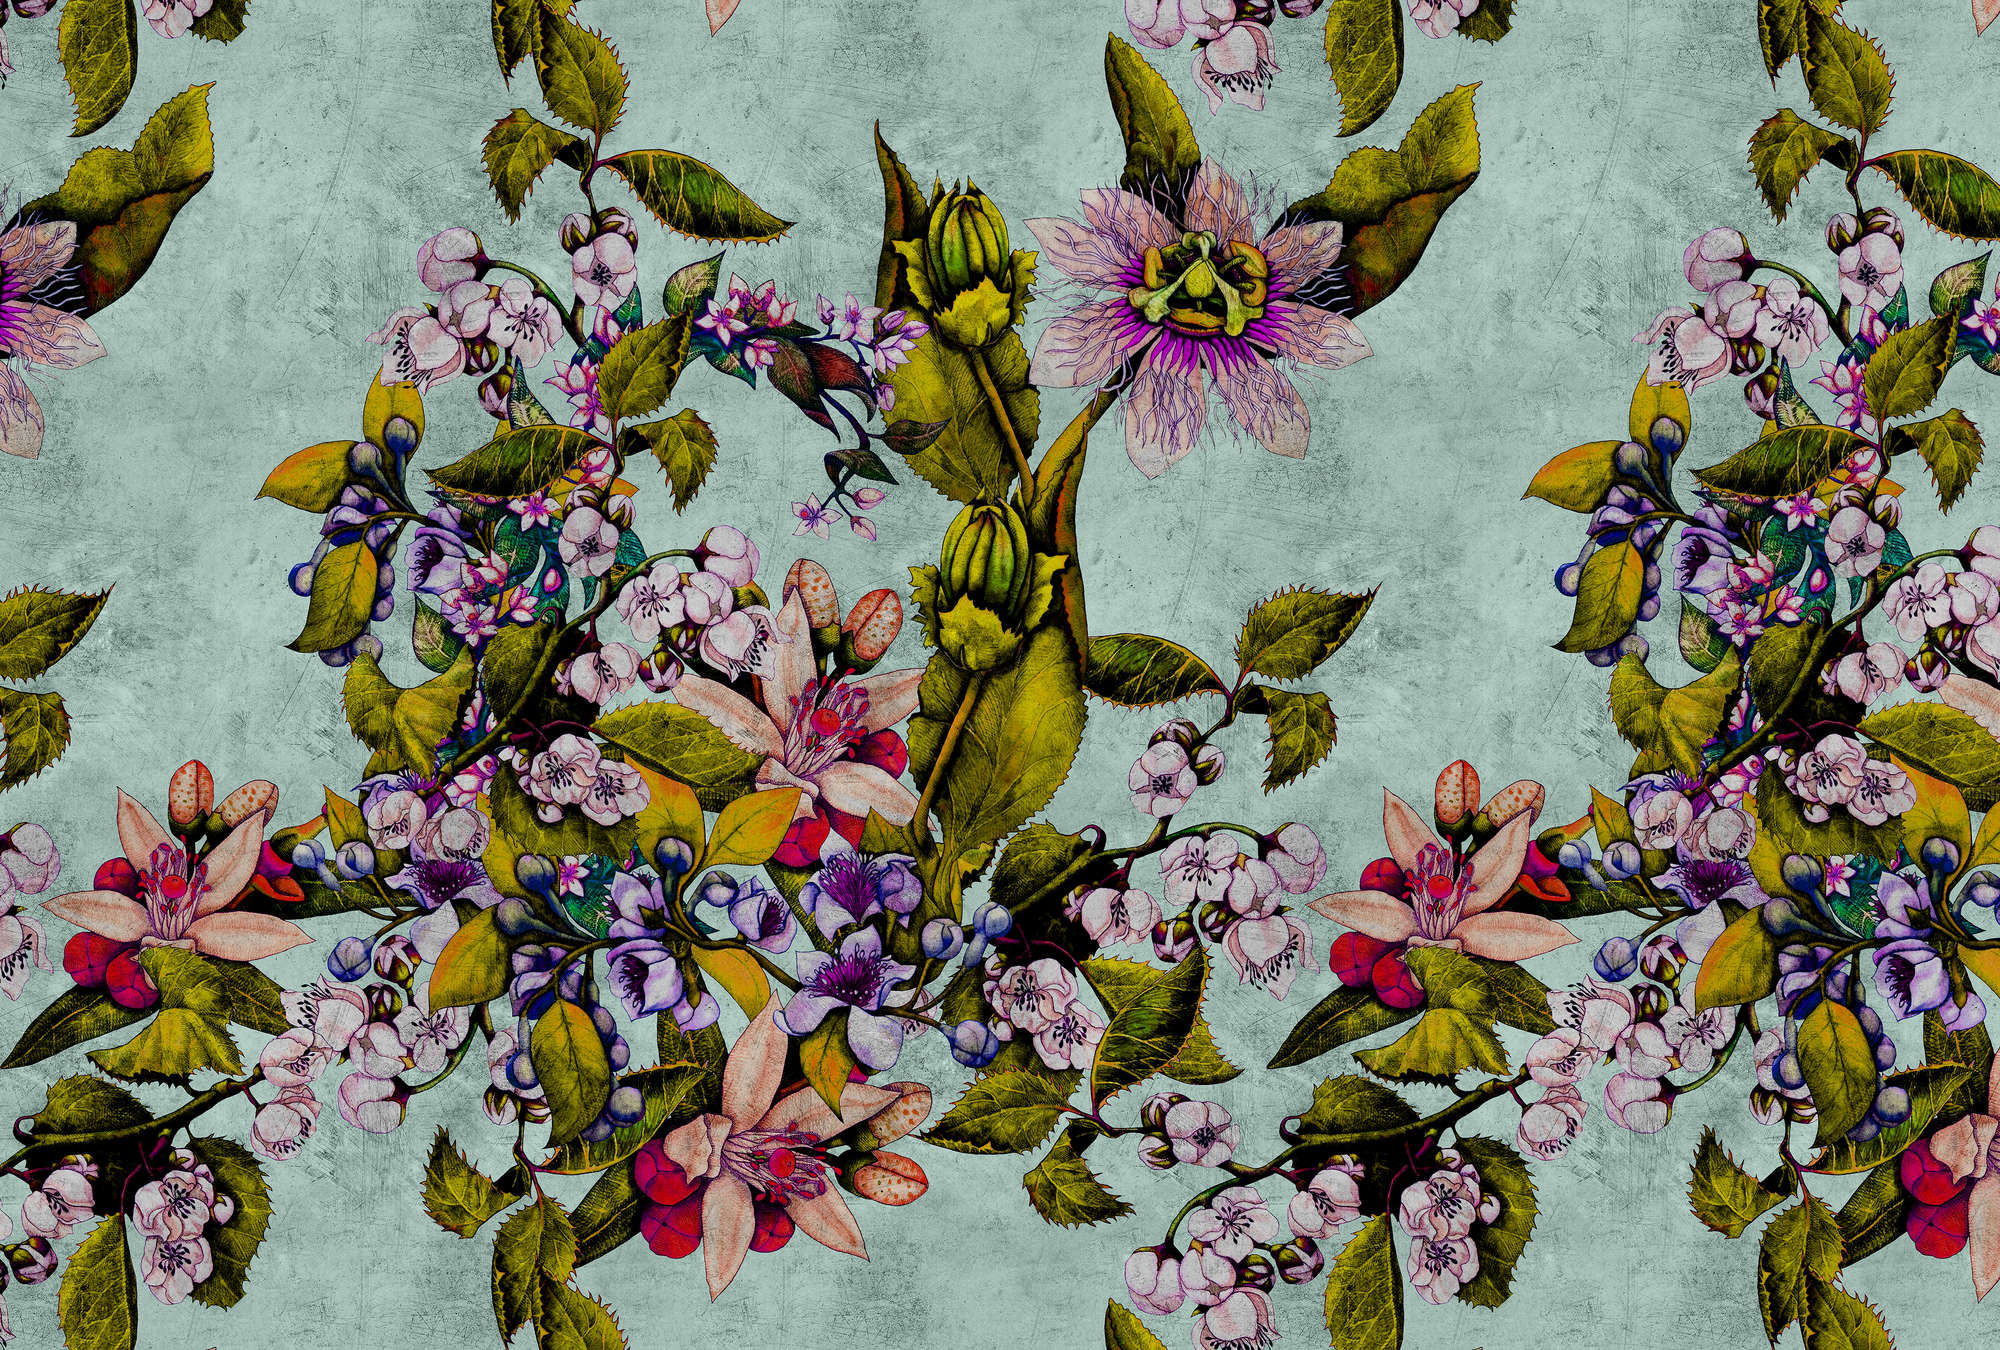             Tropical Passion 2 - Papel Pintado Textura Rasposa con Flores y Capullos - Verde | Tejido sin tejer liso mate
        